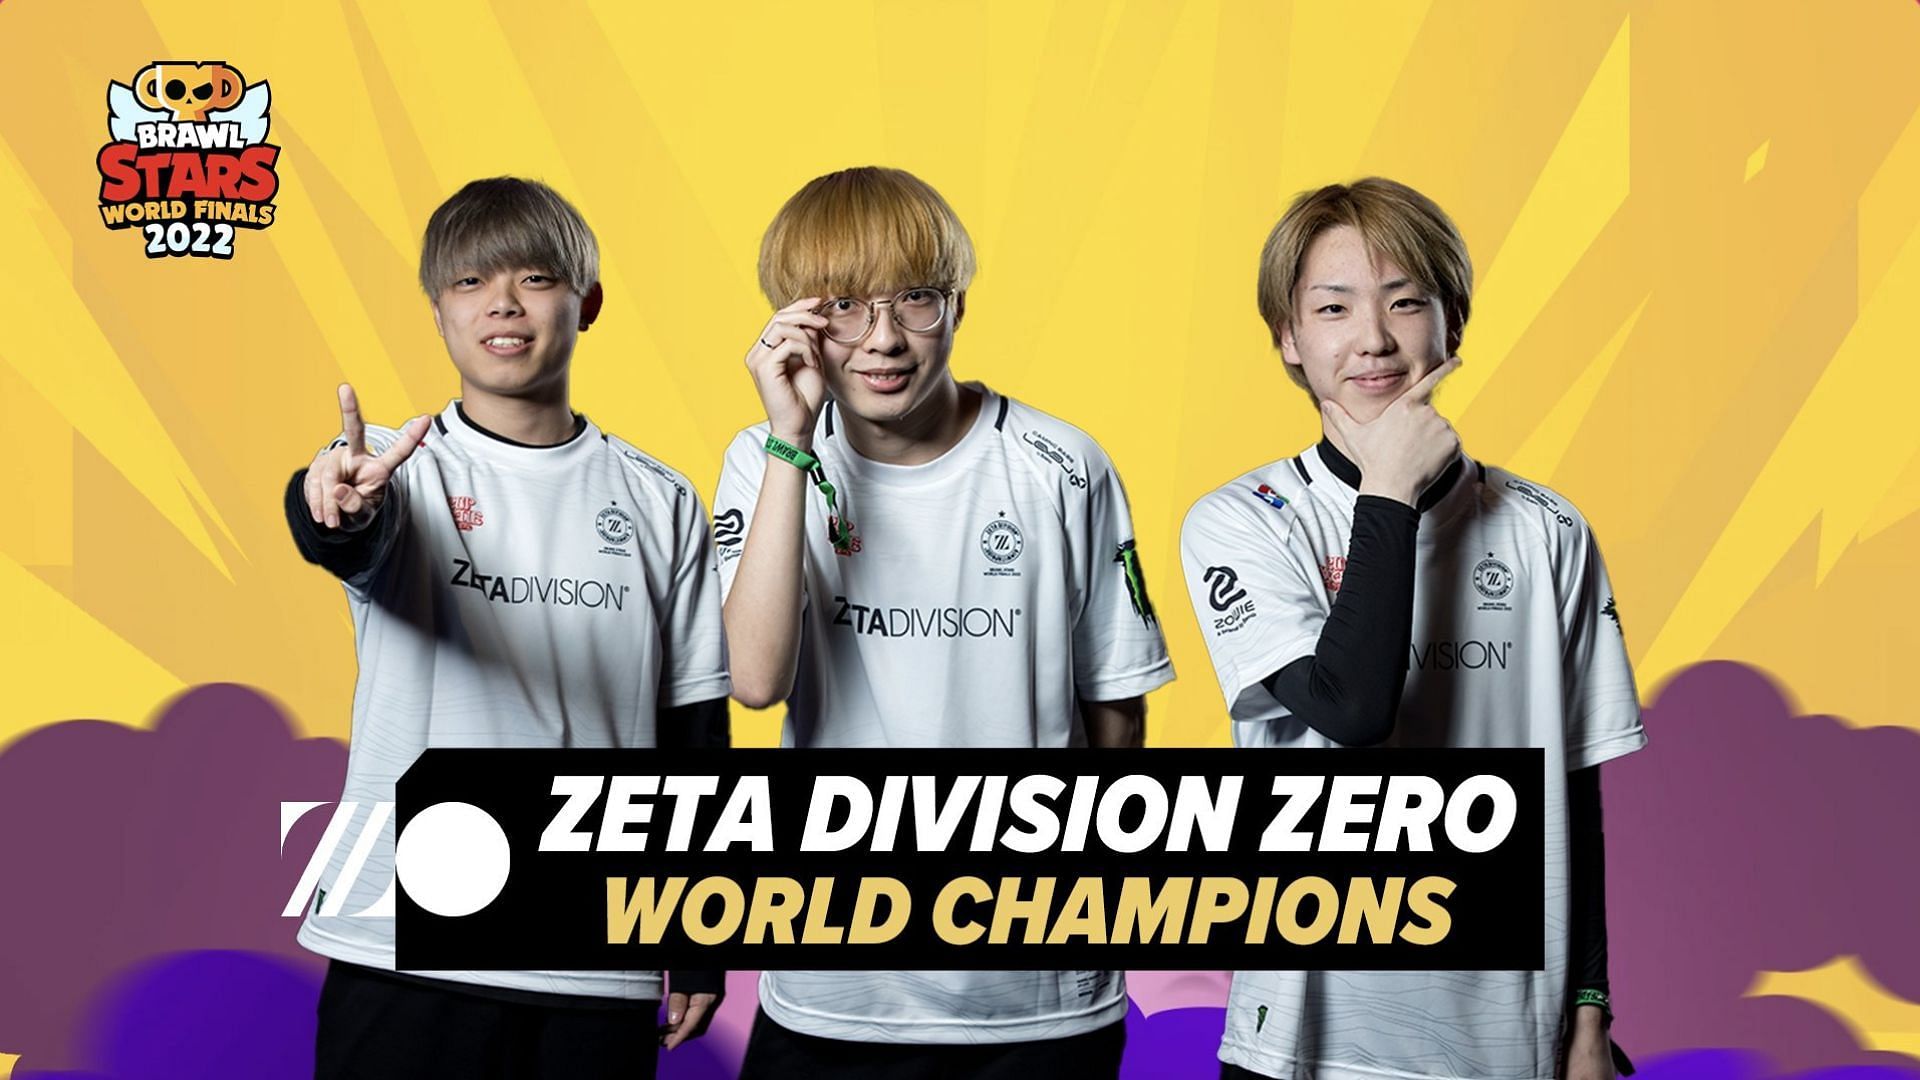 Zeta Division wins Brawl Stars World Finals 2022 (Image via Supercell)